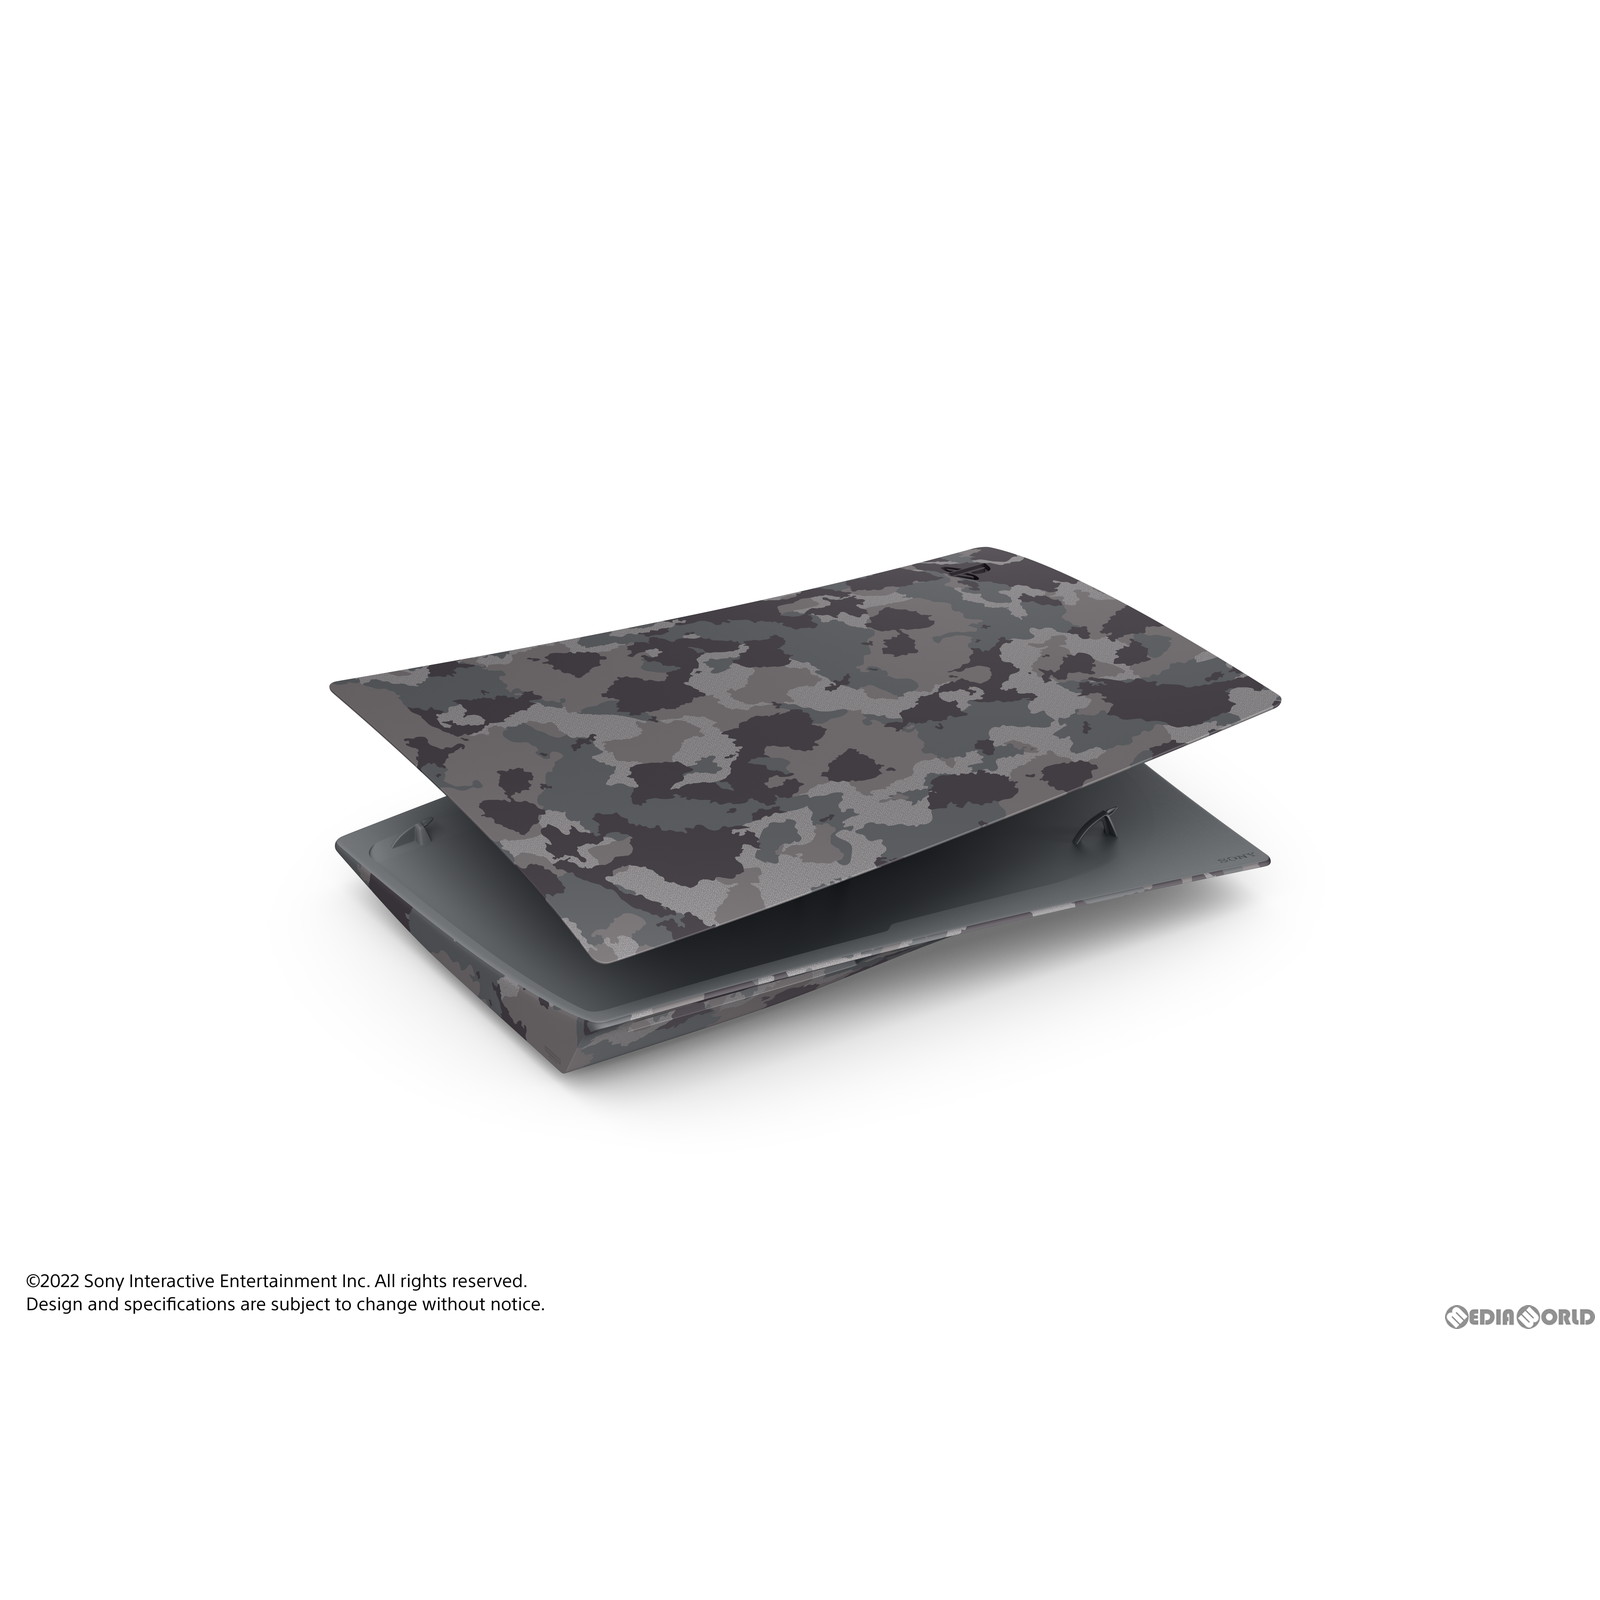 【中古即納】[ACC][PS5]PlayStation 5用カバー(プレイステーション5用カバー) グレー カモフラージュ SIE(CFIJ-16010)(20221014)